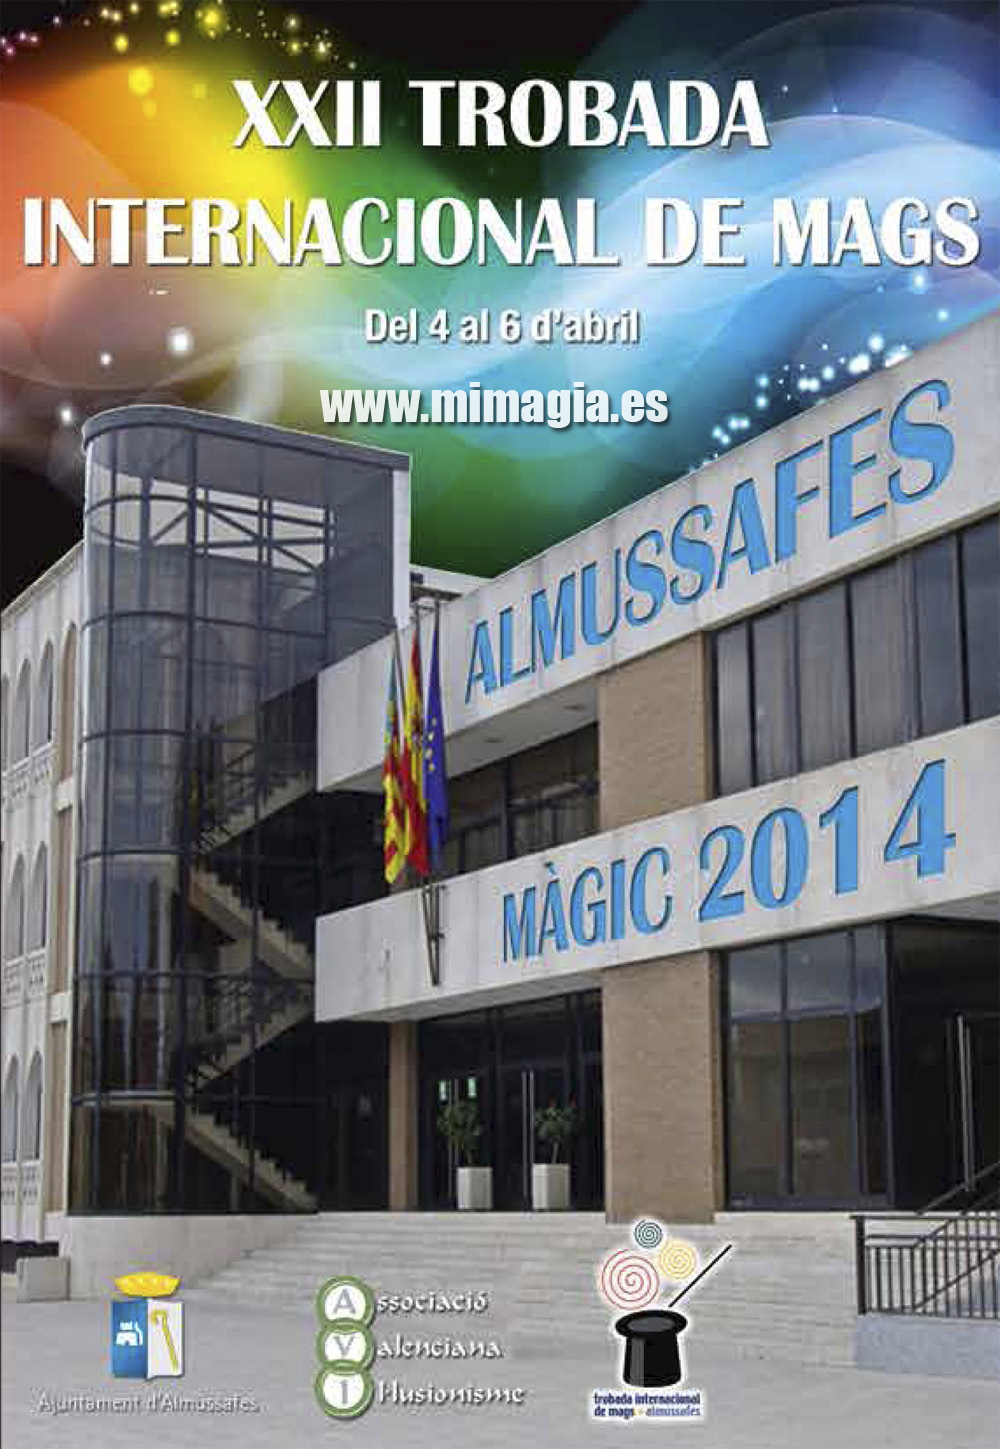 XXII Encuentro Internacional de Magos en Almussafes 2014